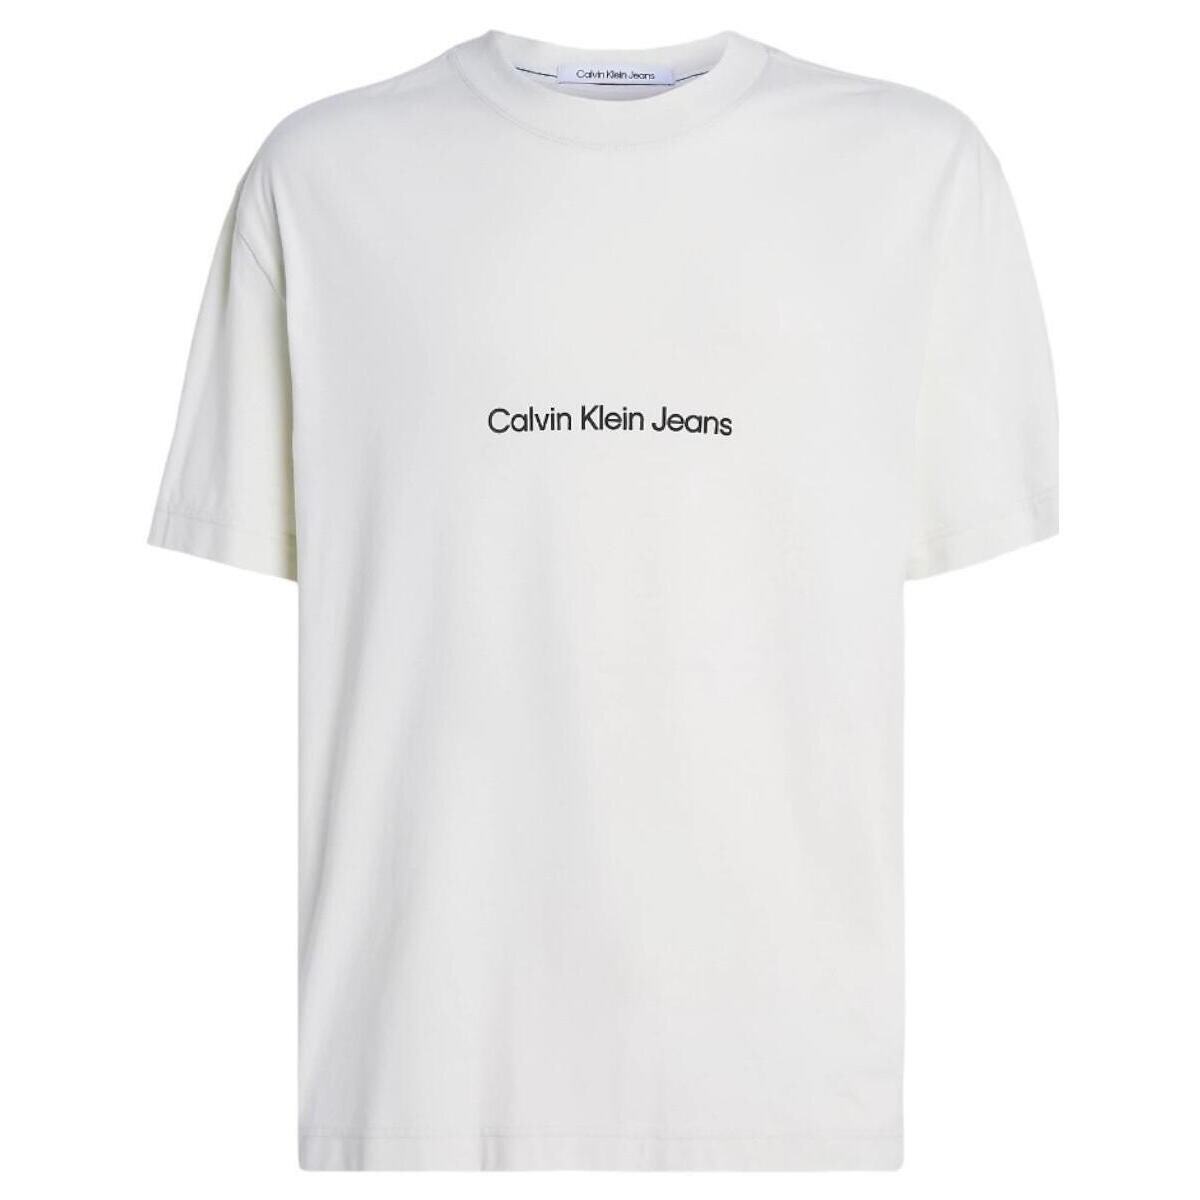 Ruhák Férfi Rövid ujjú pólók Calvin Klein Jeans  Bézs